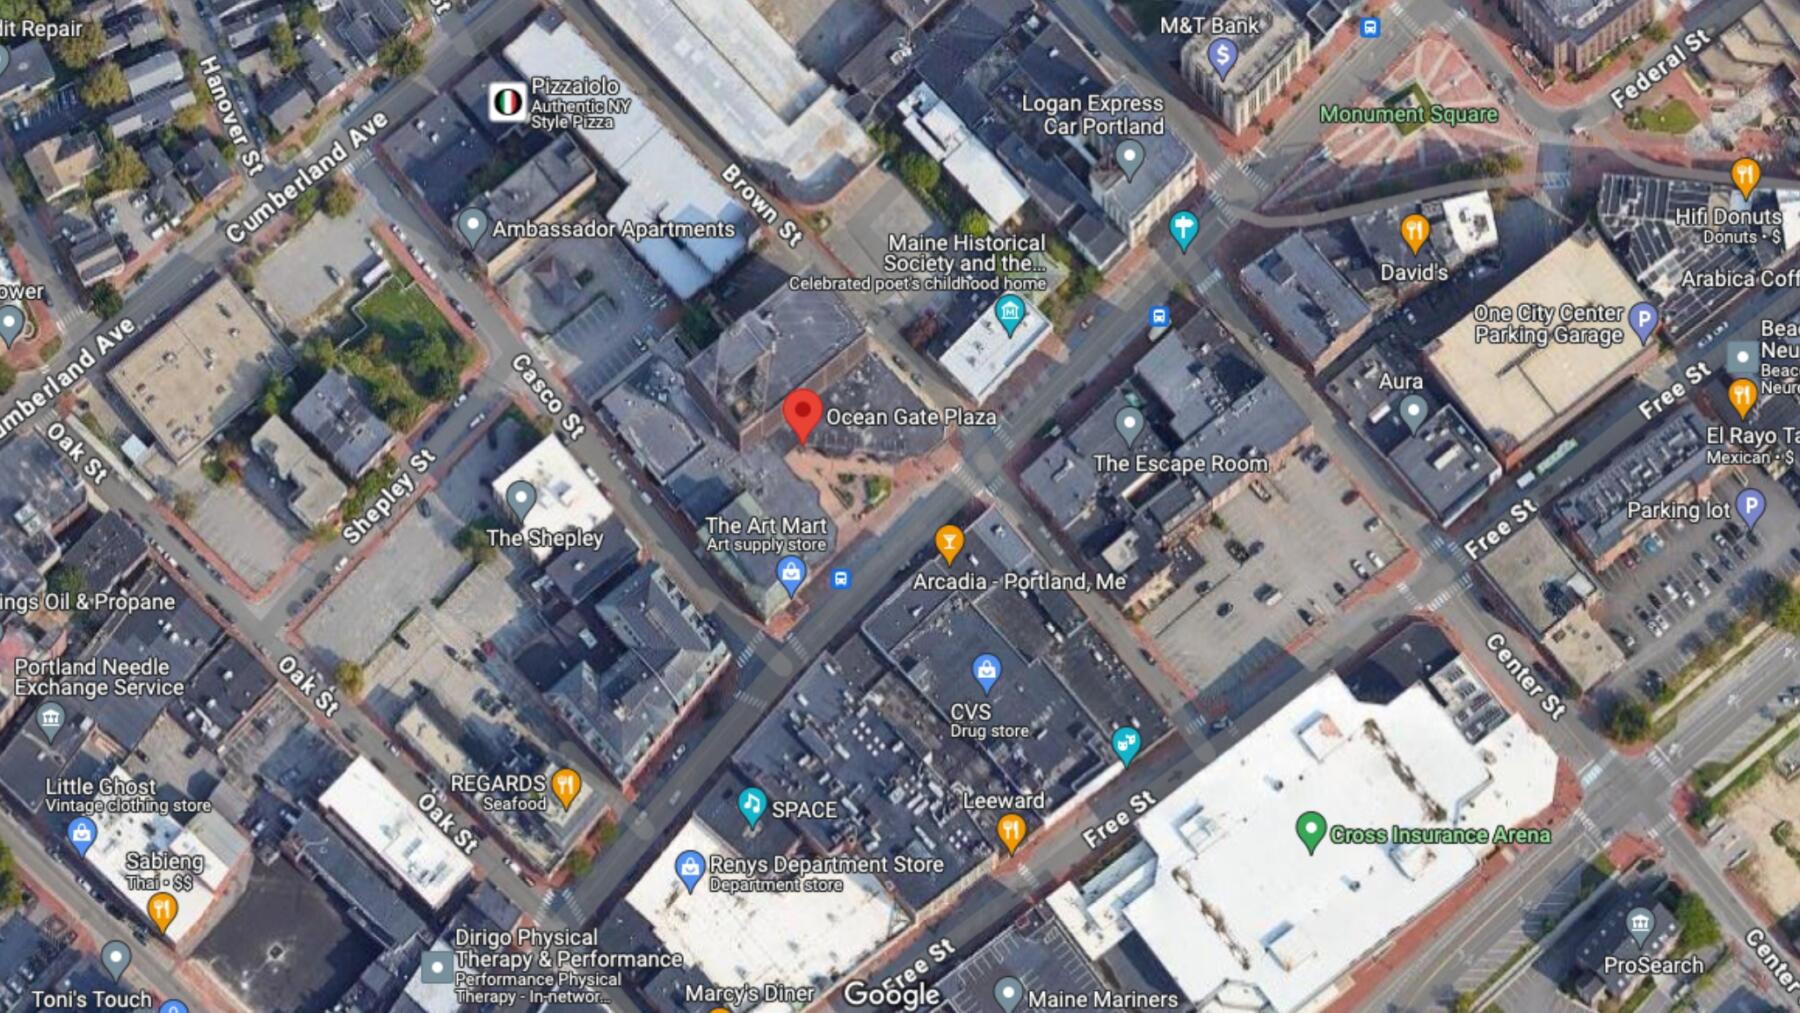 Google Maps View of 511 Congress Street